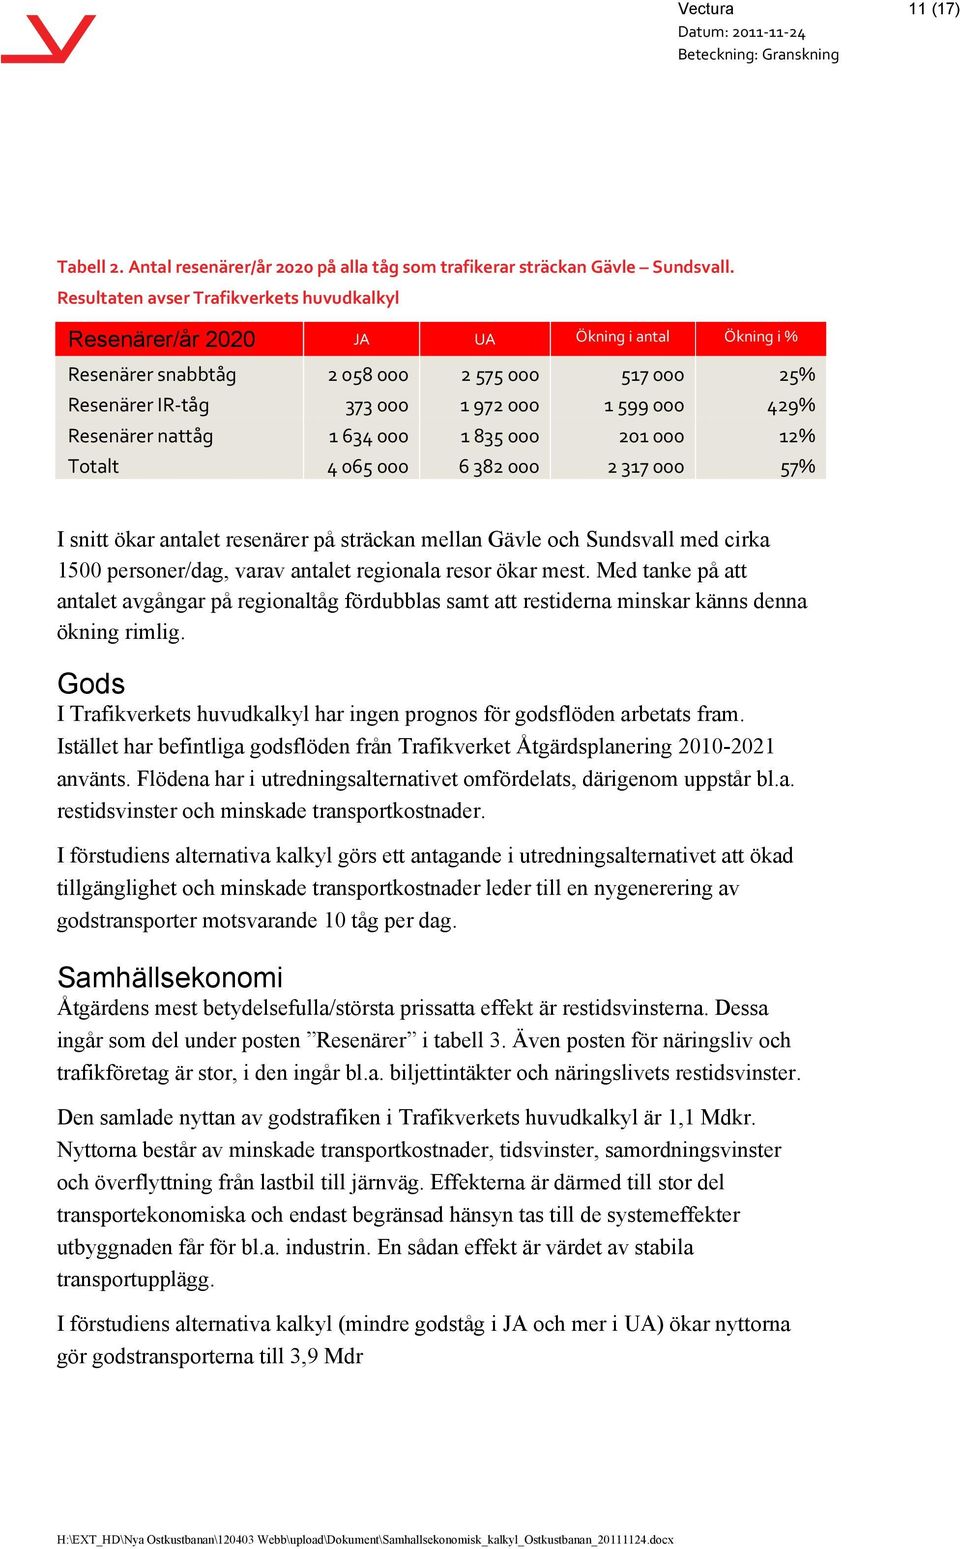 Resenärer nattåg 1 634 000 1 835 000 201 000 12% Totalt 4 065 000 6 382 000 2 317 000 57% I snitt ökar antalet resenärer på sträckan mellan Gävle och Sundsvall med cirka 1500 personer/dag, varav